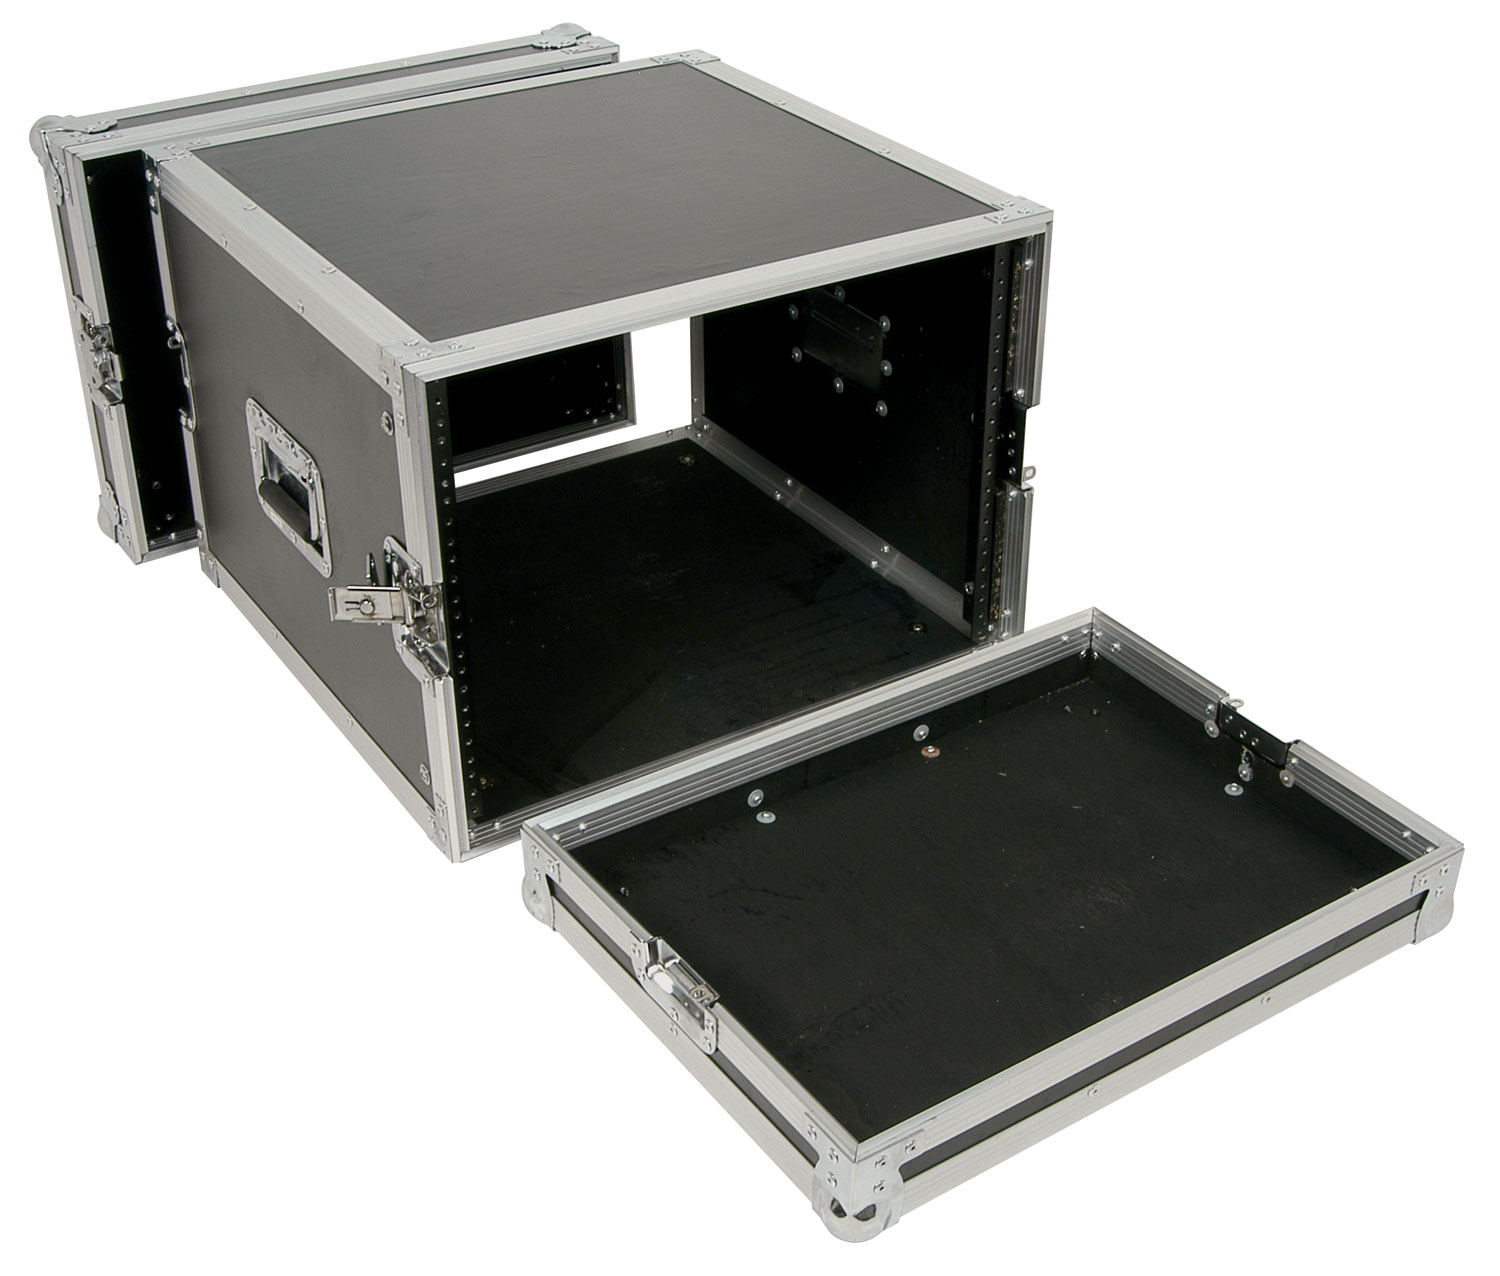 Citronic RACK:8U Βαλίτσα μεταφοράς 19″ για εξοπλισμό ήχου (Τεμάχιο)